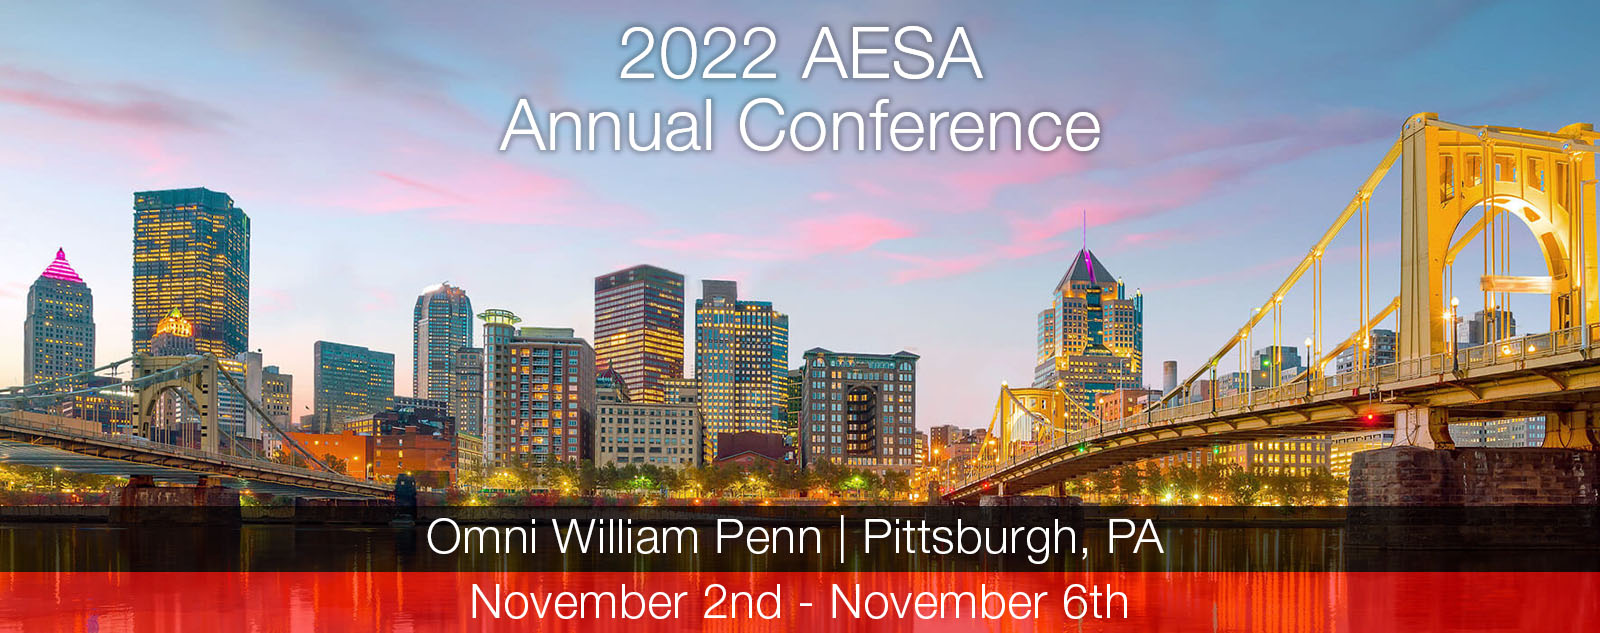 AESA 2022 Annual Conference, Pittsburgh PA, Oni William Penn, Nov 2nd thru Nov 6th